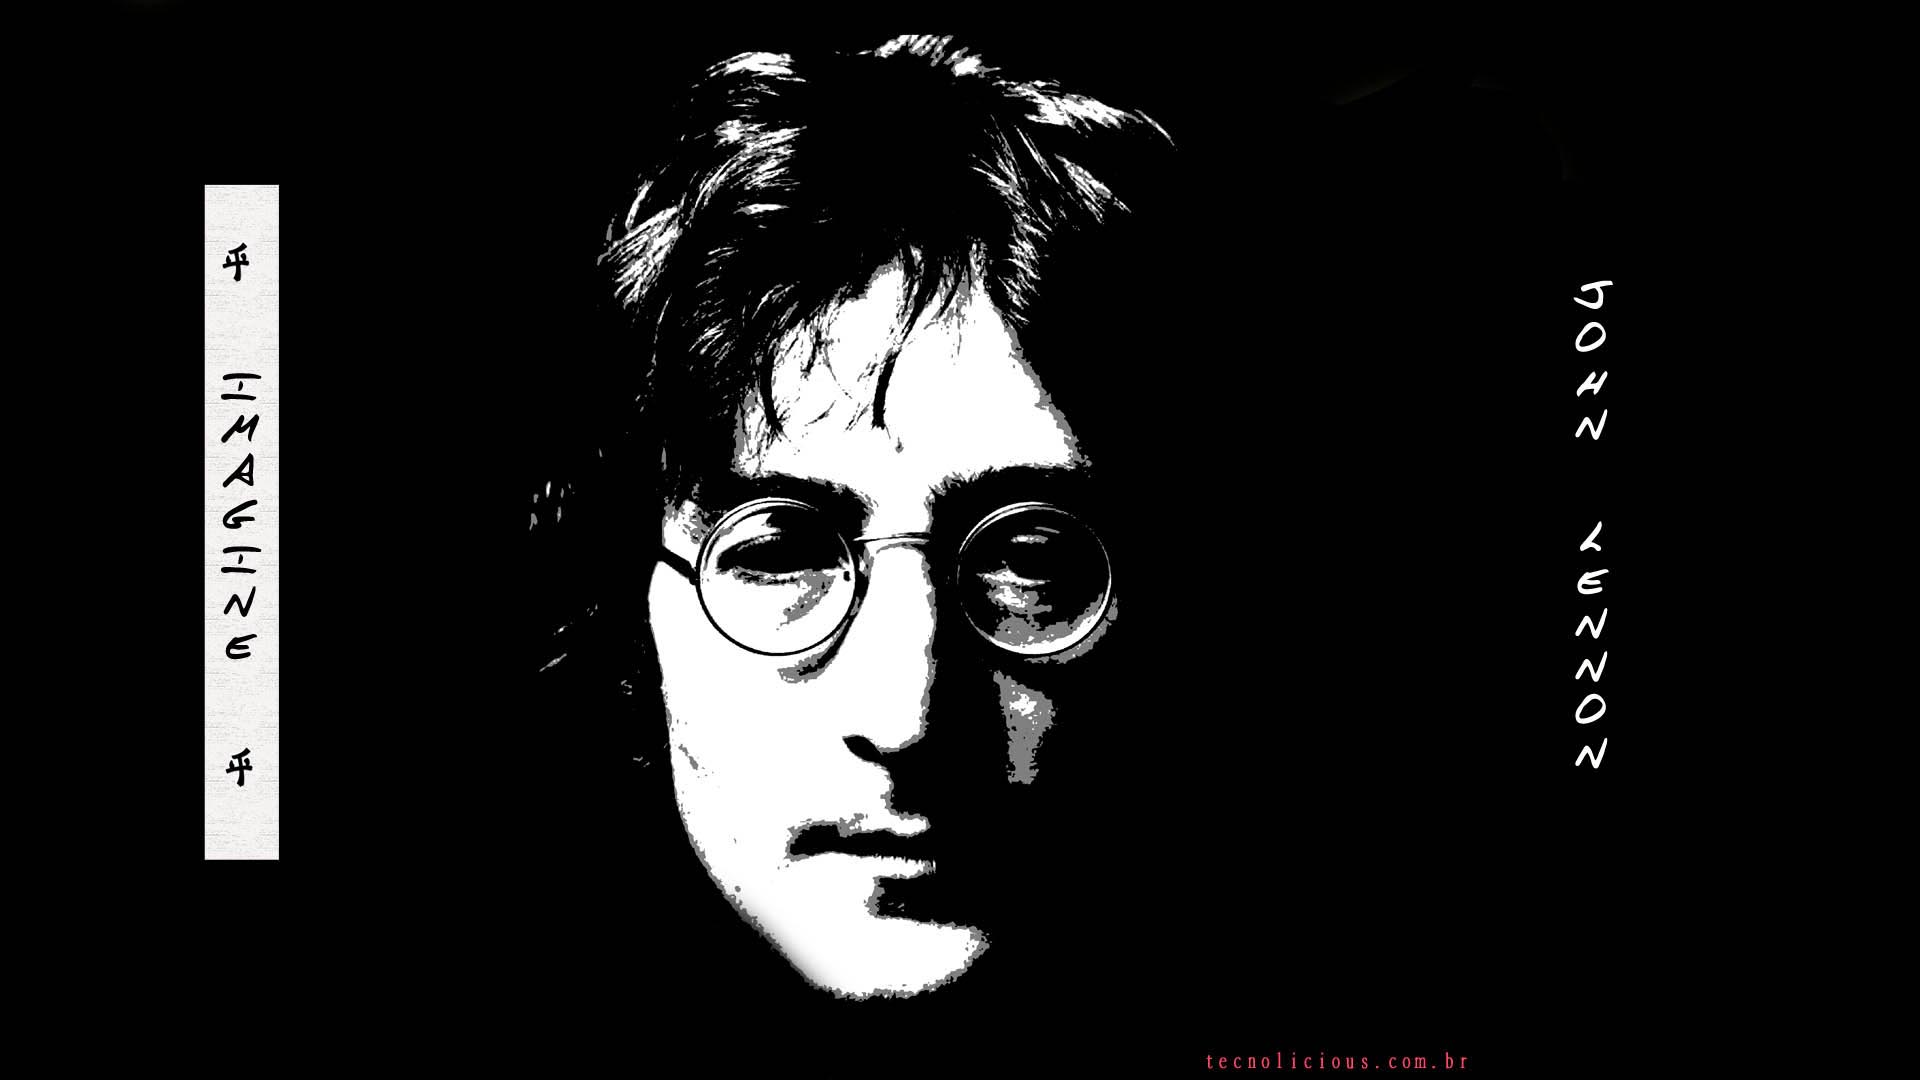 New John Lennon background. John Lennon wallpaper